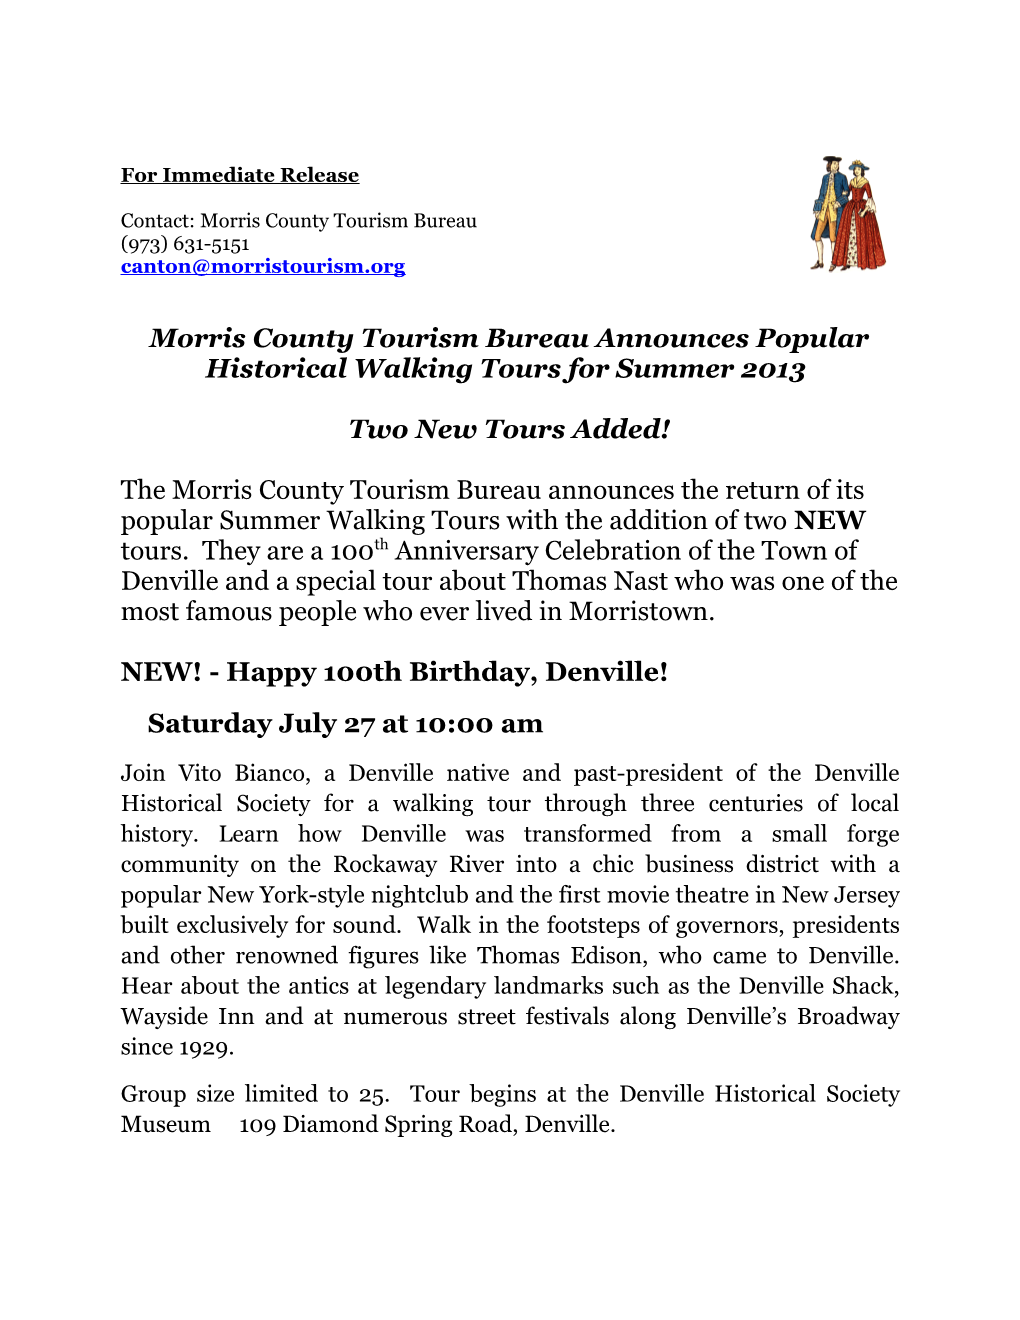 Morris County Tourism Bureau Announces Popular Historical Walking Tours for Summer 2013